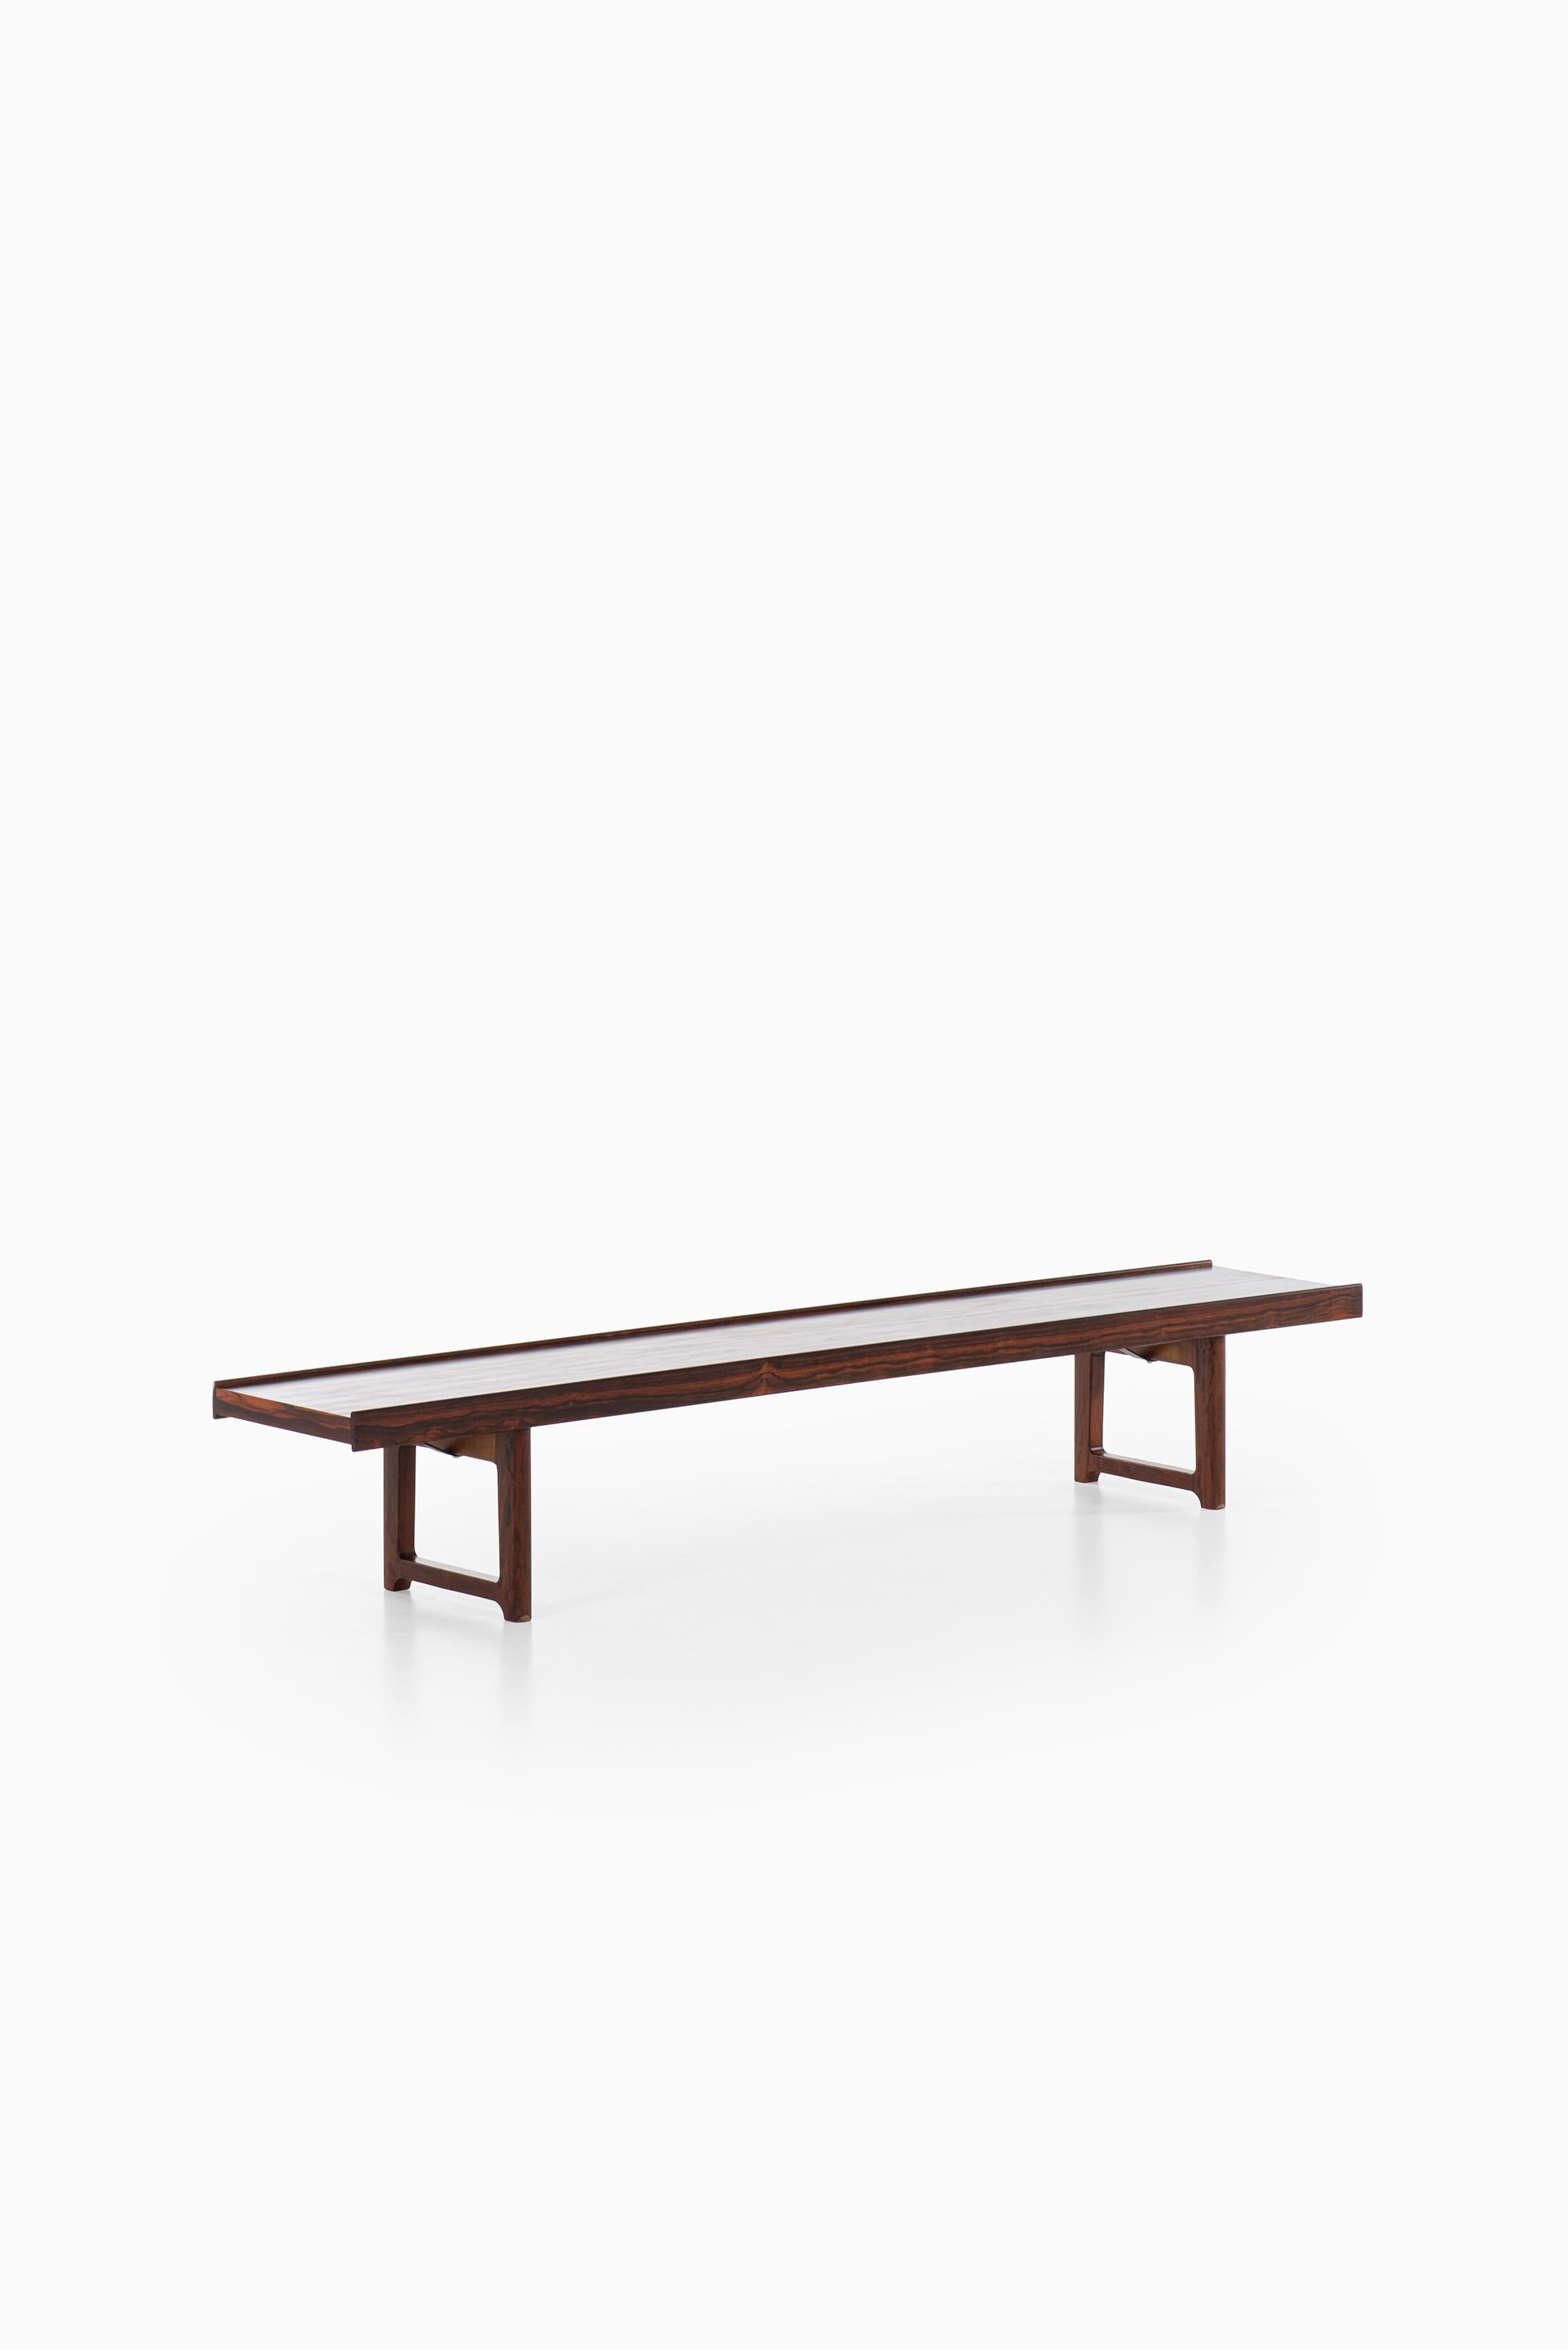 Rosewood Torbjørn Afdal Bench / Side Table Model Krobo Produced in Norway For Sale